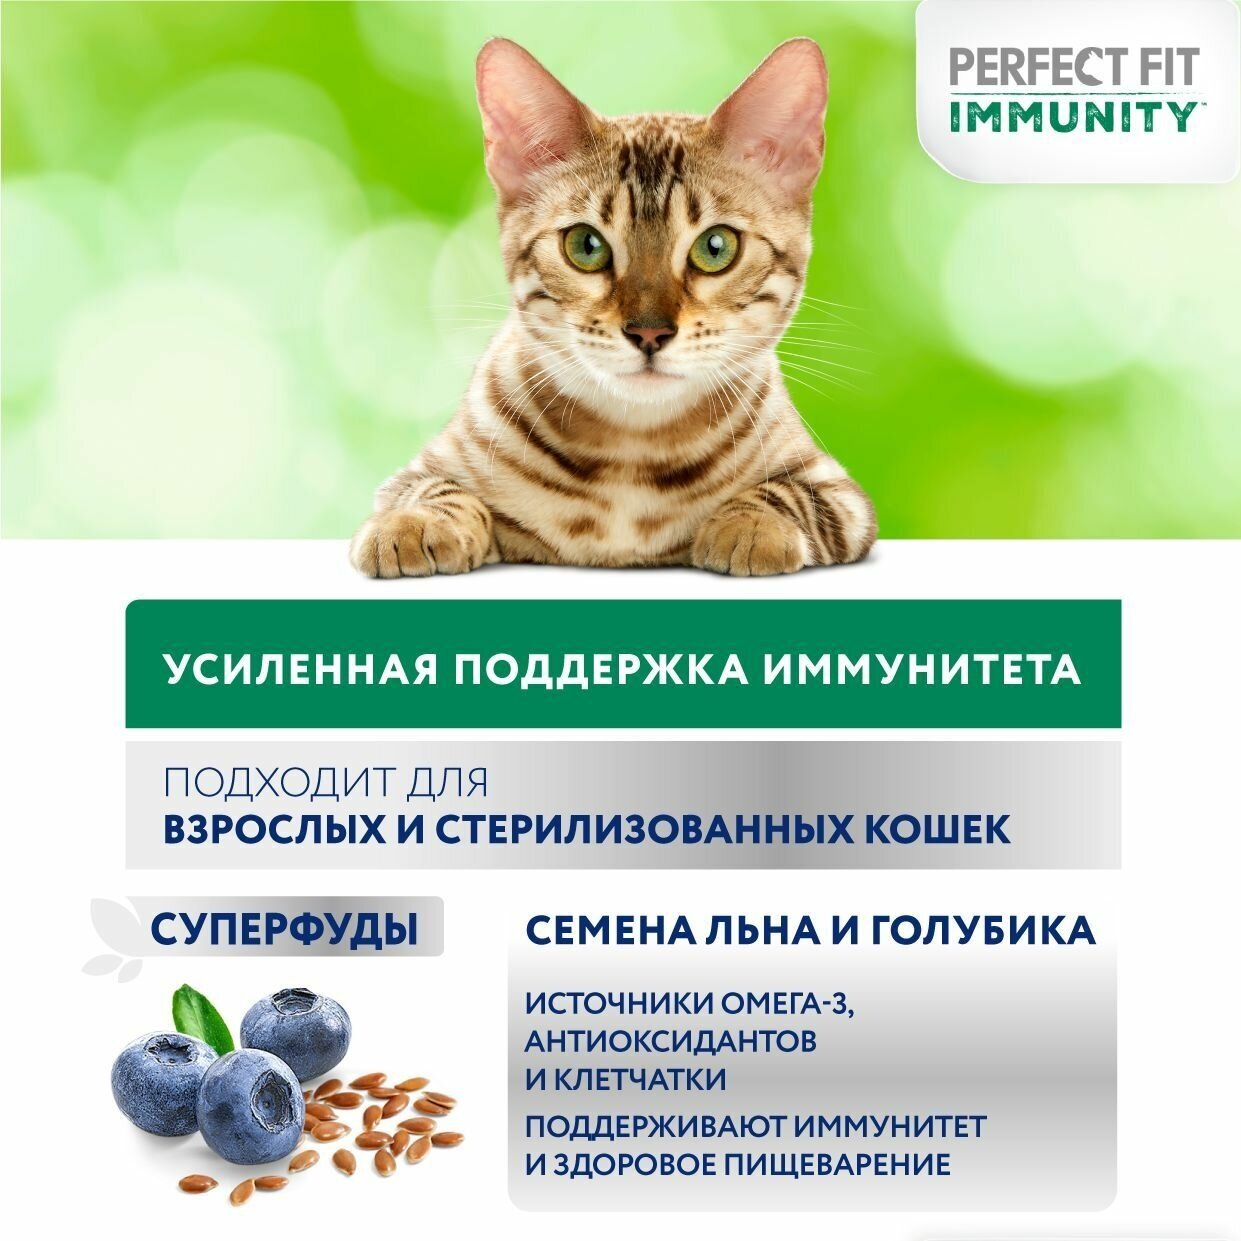 Сухой корм Perfect Fit Immunity для иммунитета кошек говядина, семяна льна, голубика 1.1кг - фотография № 8